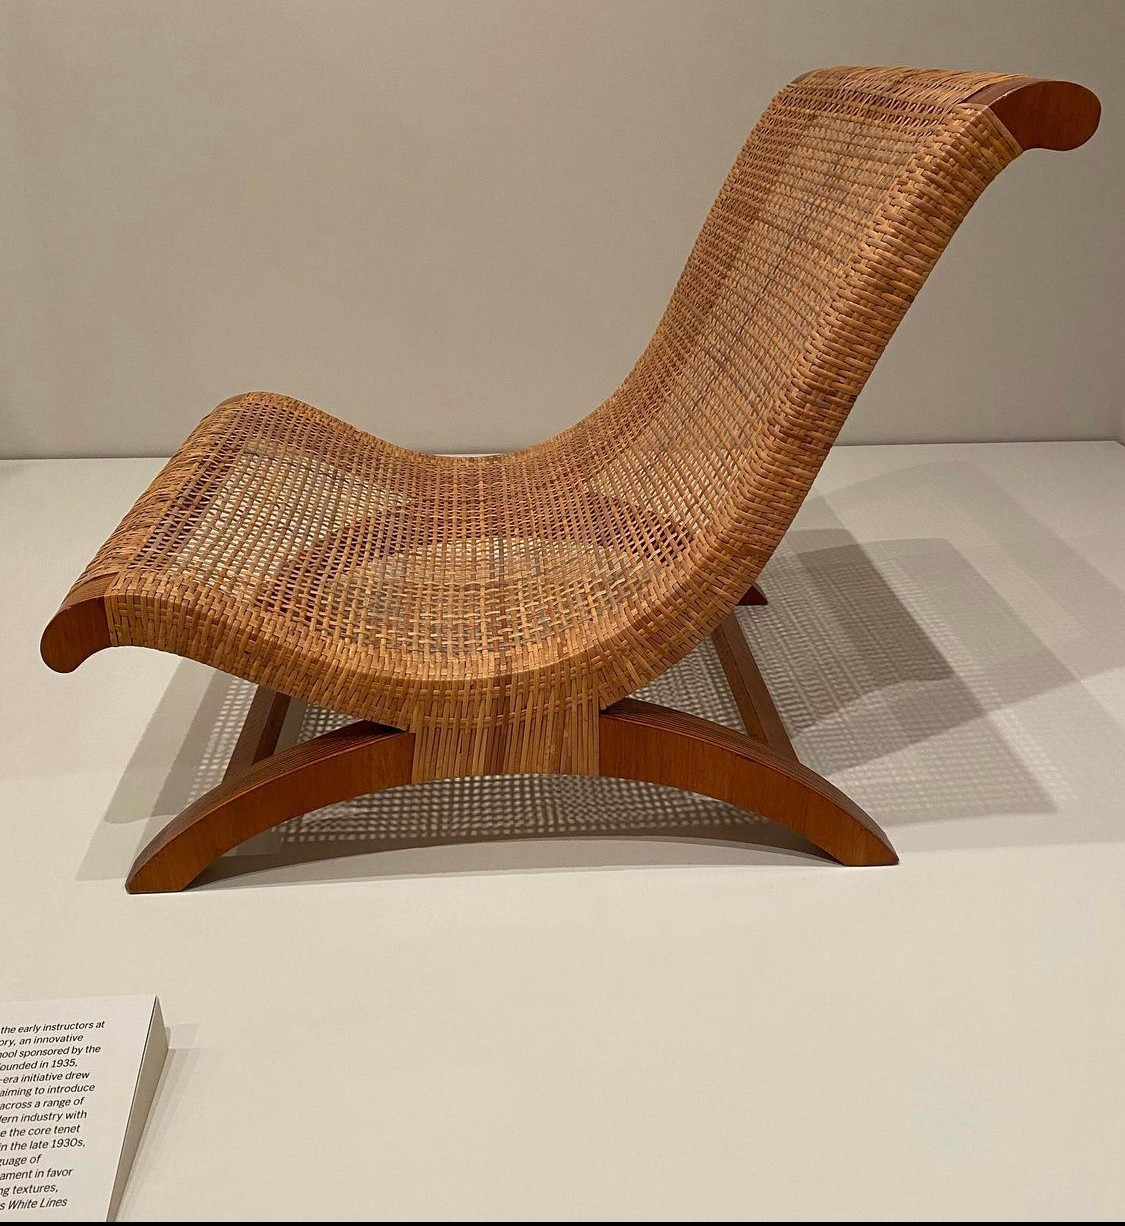 Chair by Clara Porset